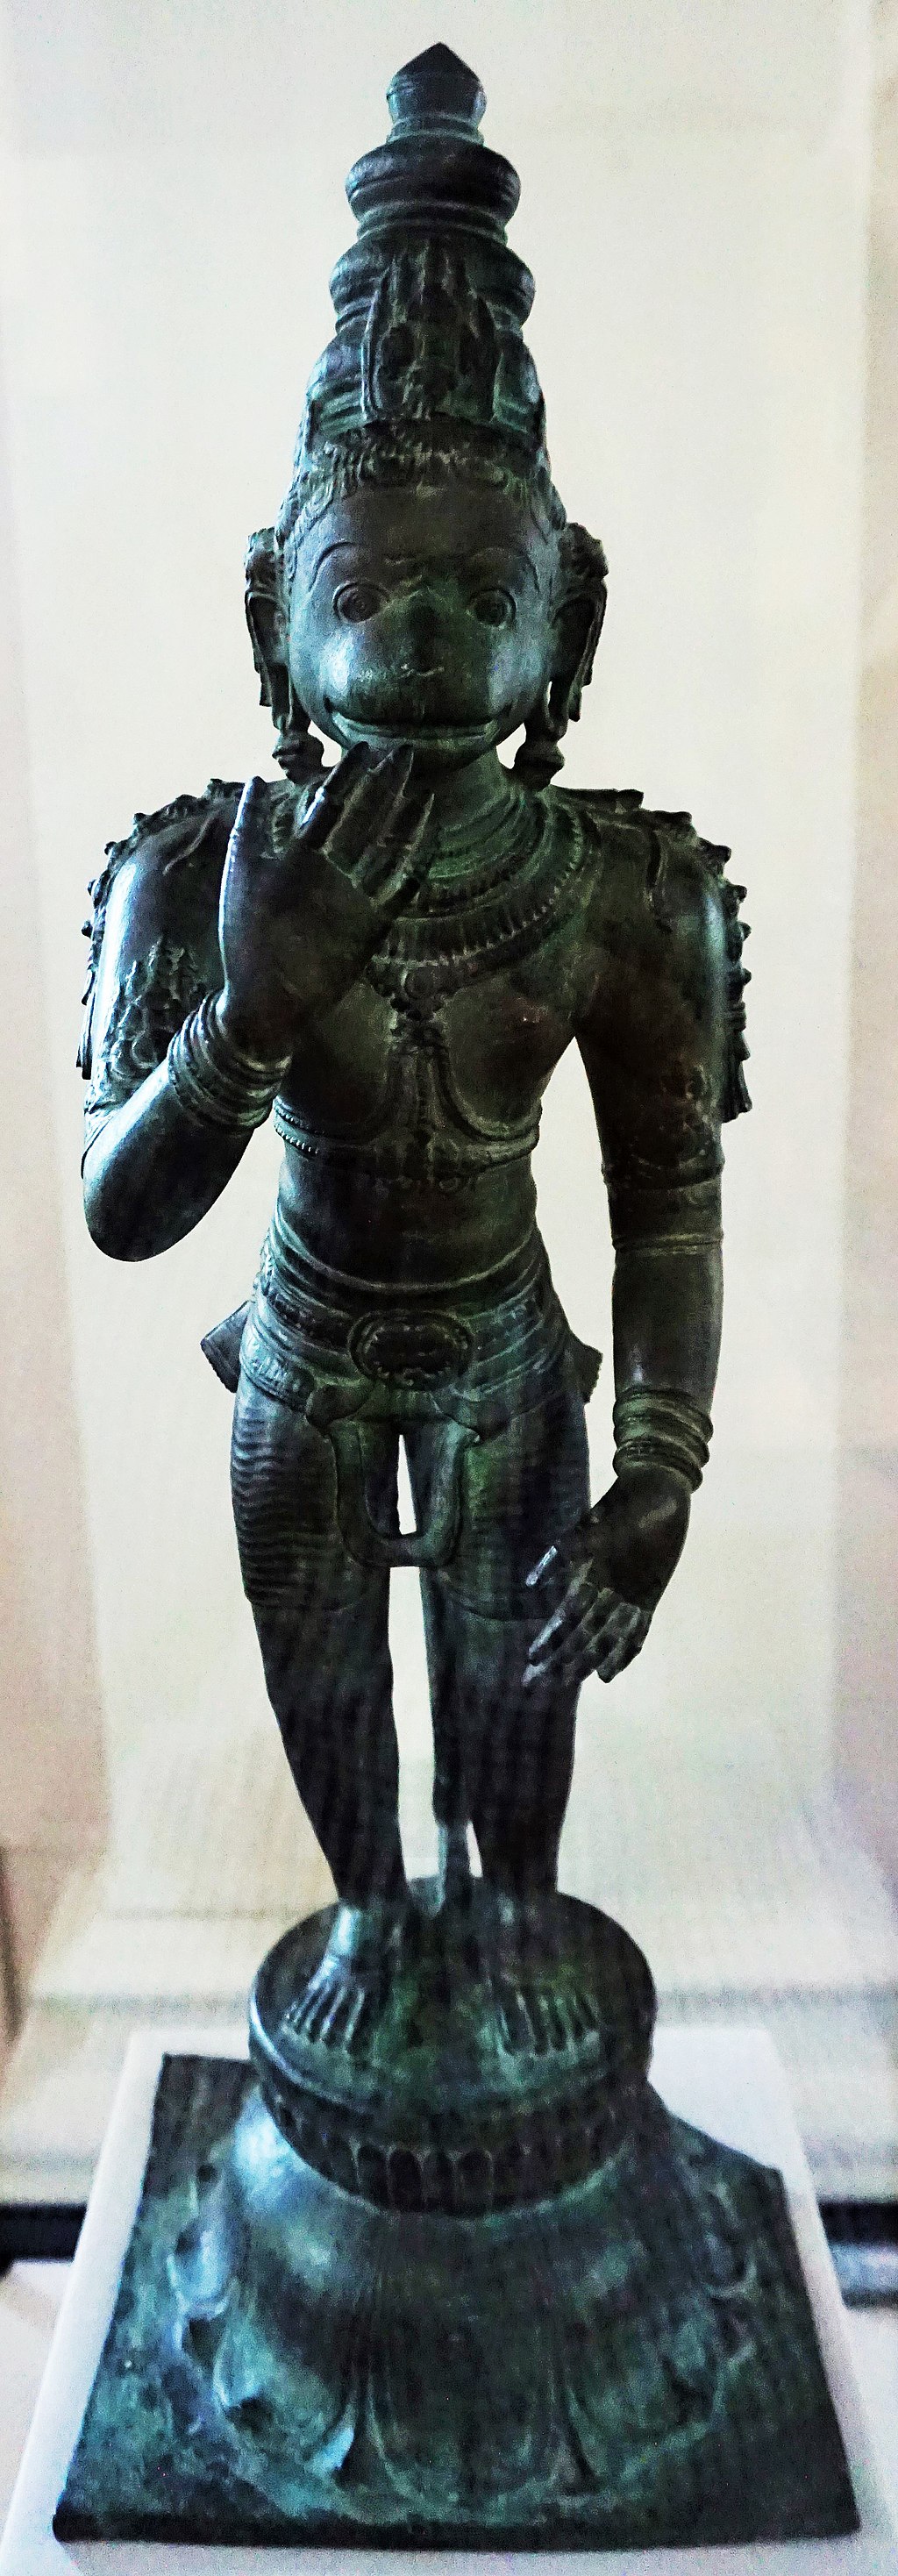 Asian Civilisations Museum - Hanuman